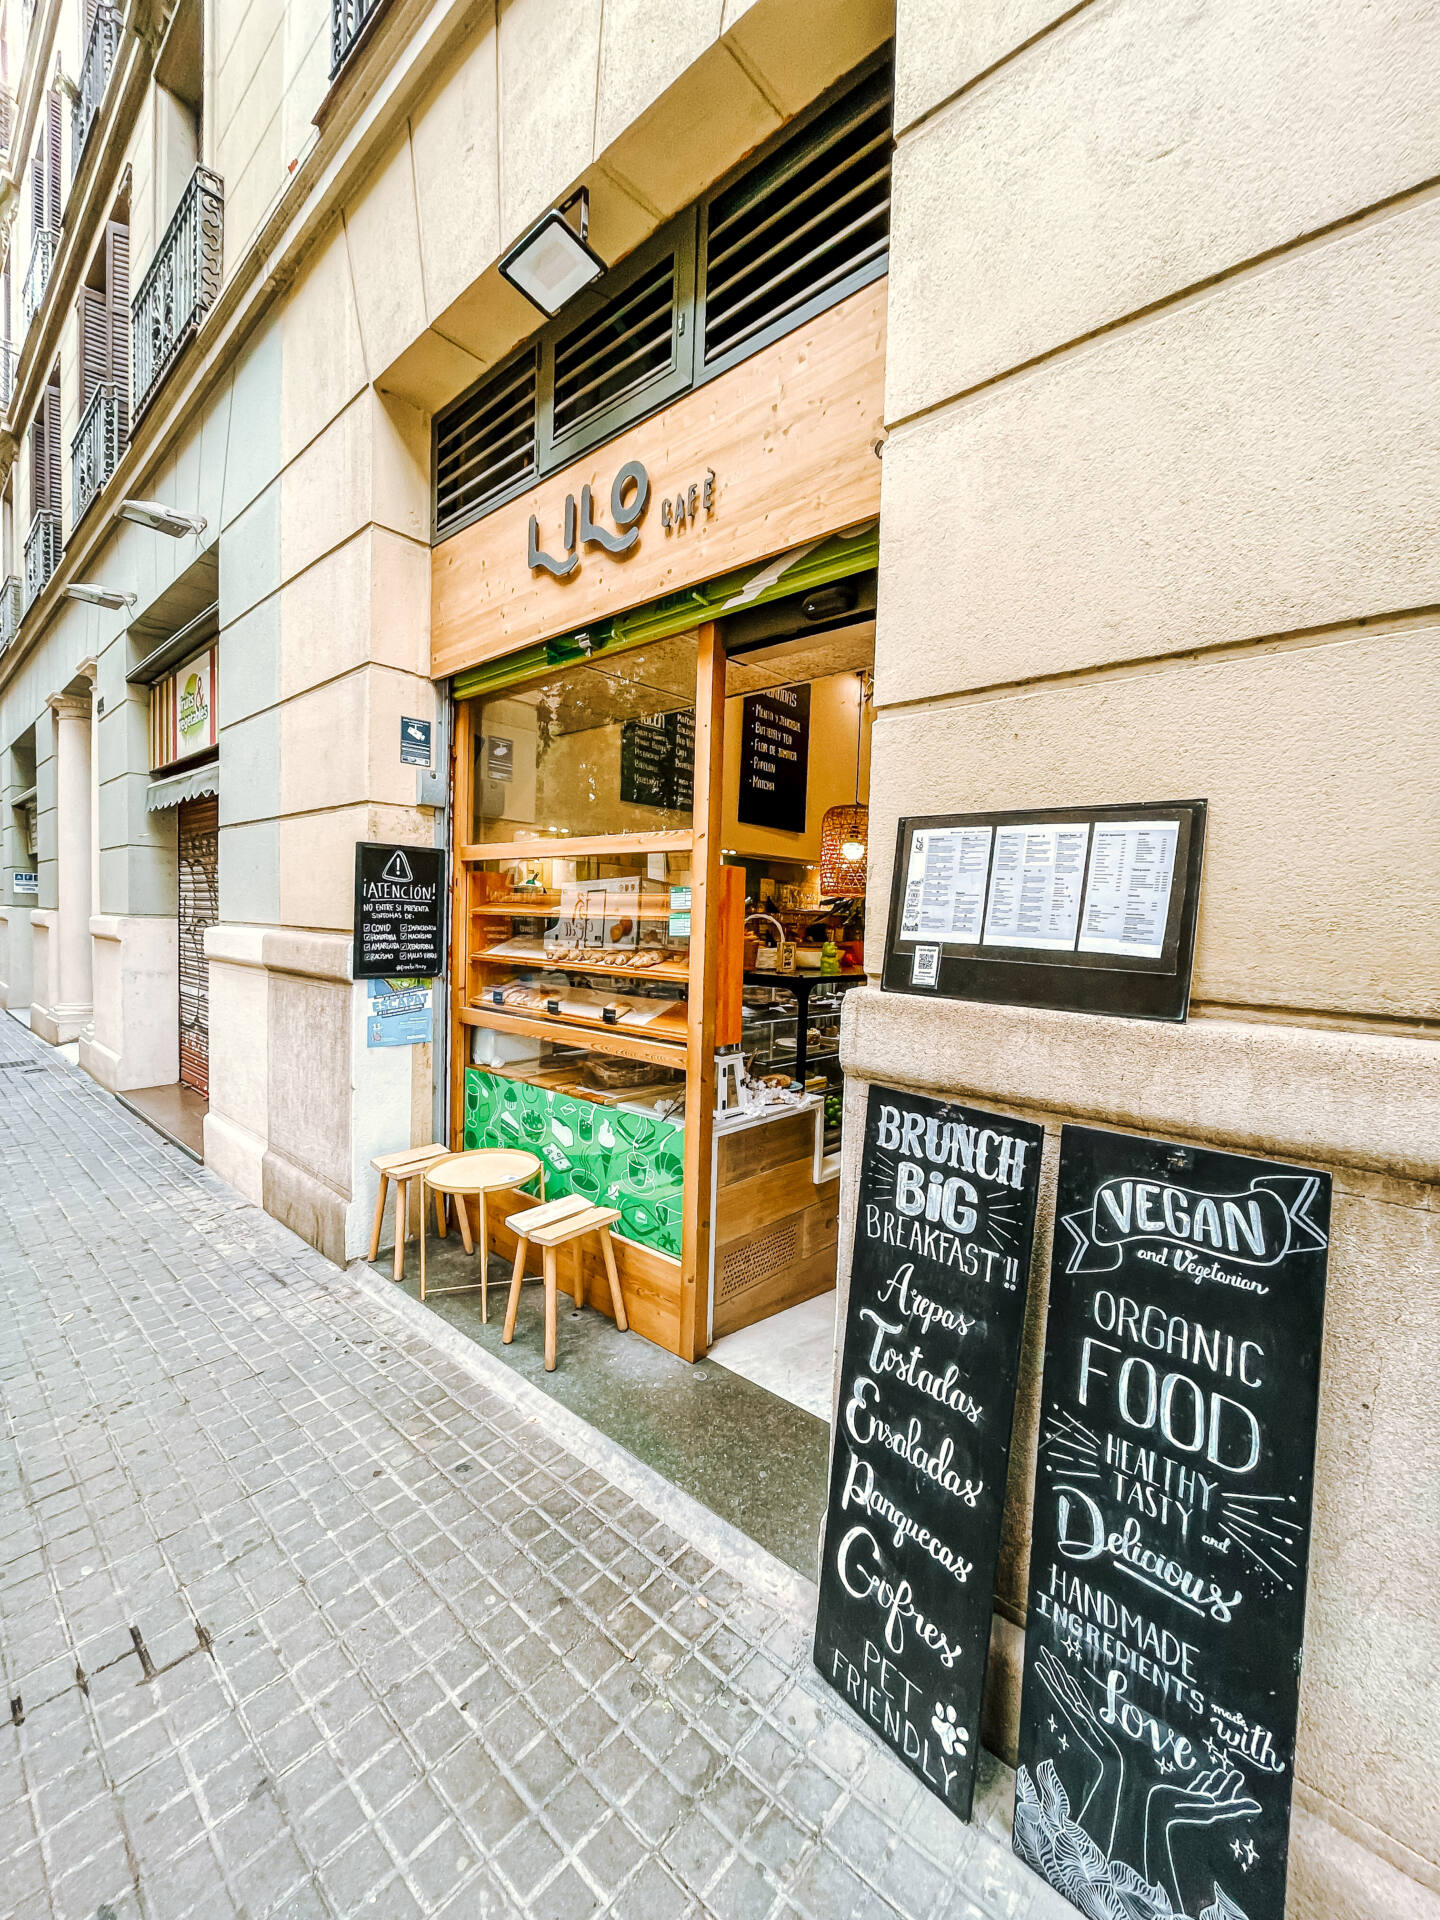 Lilo cafe Barcelona